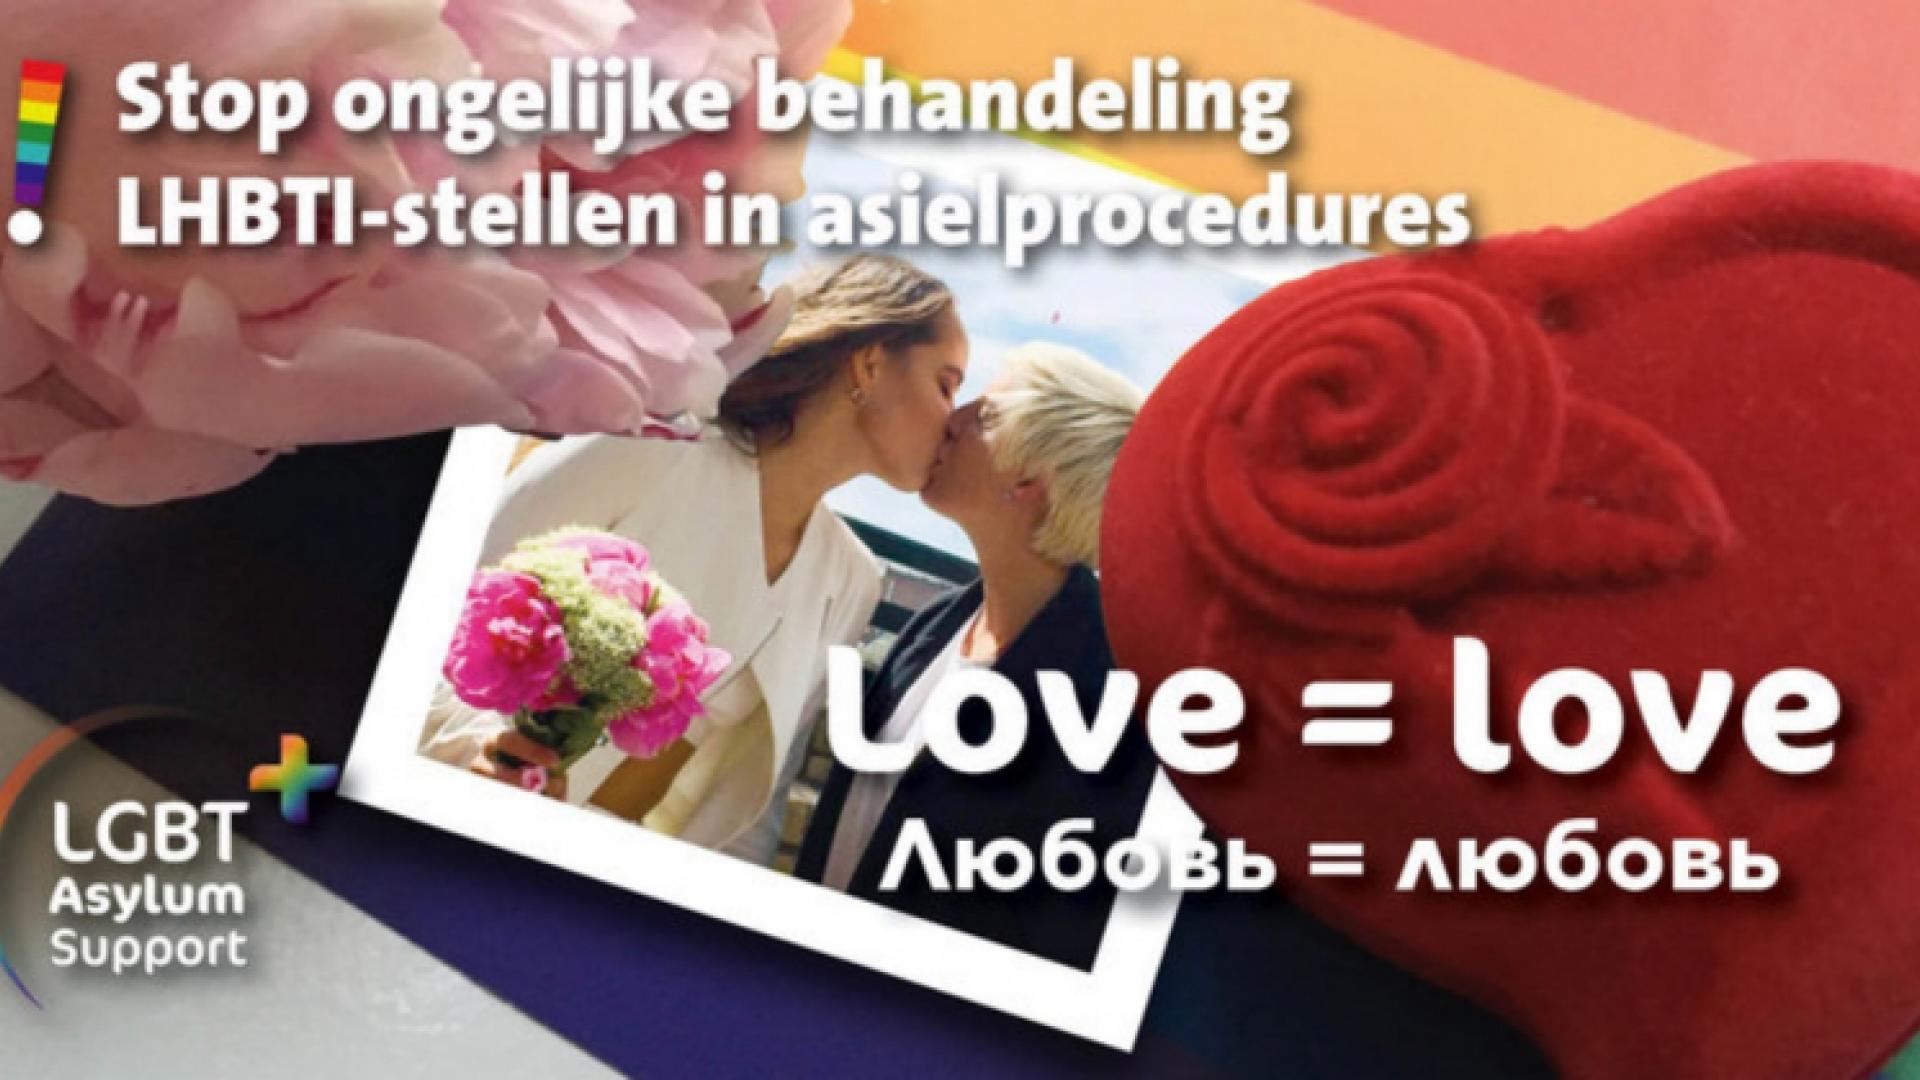 Affiche van LGBT Asylum support met tekst Love=Love in Engels en Russisch